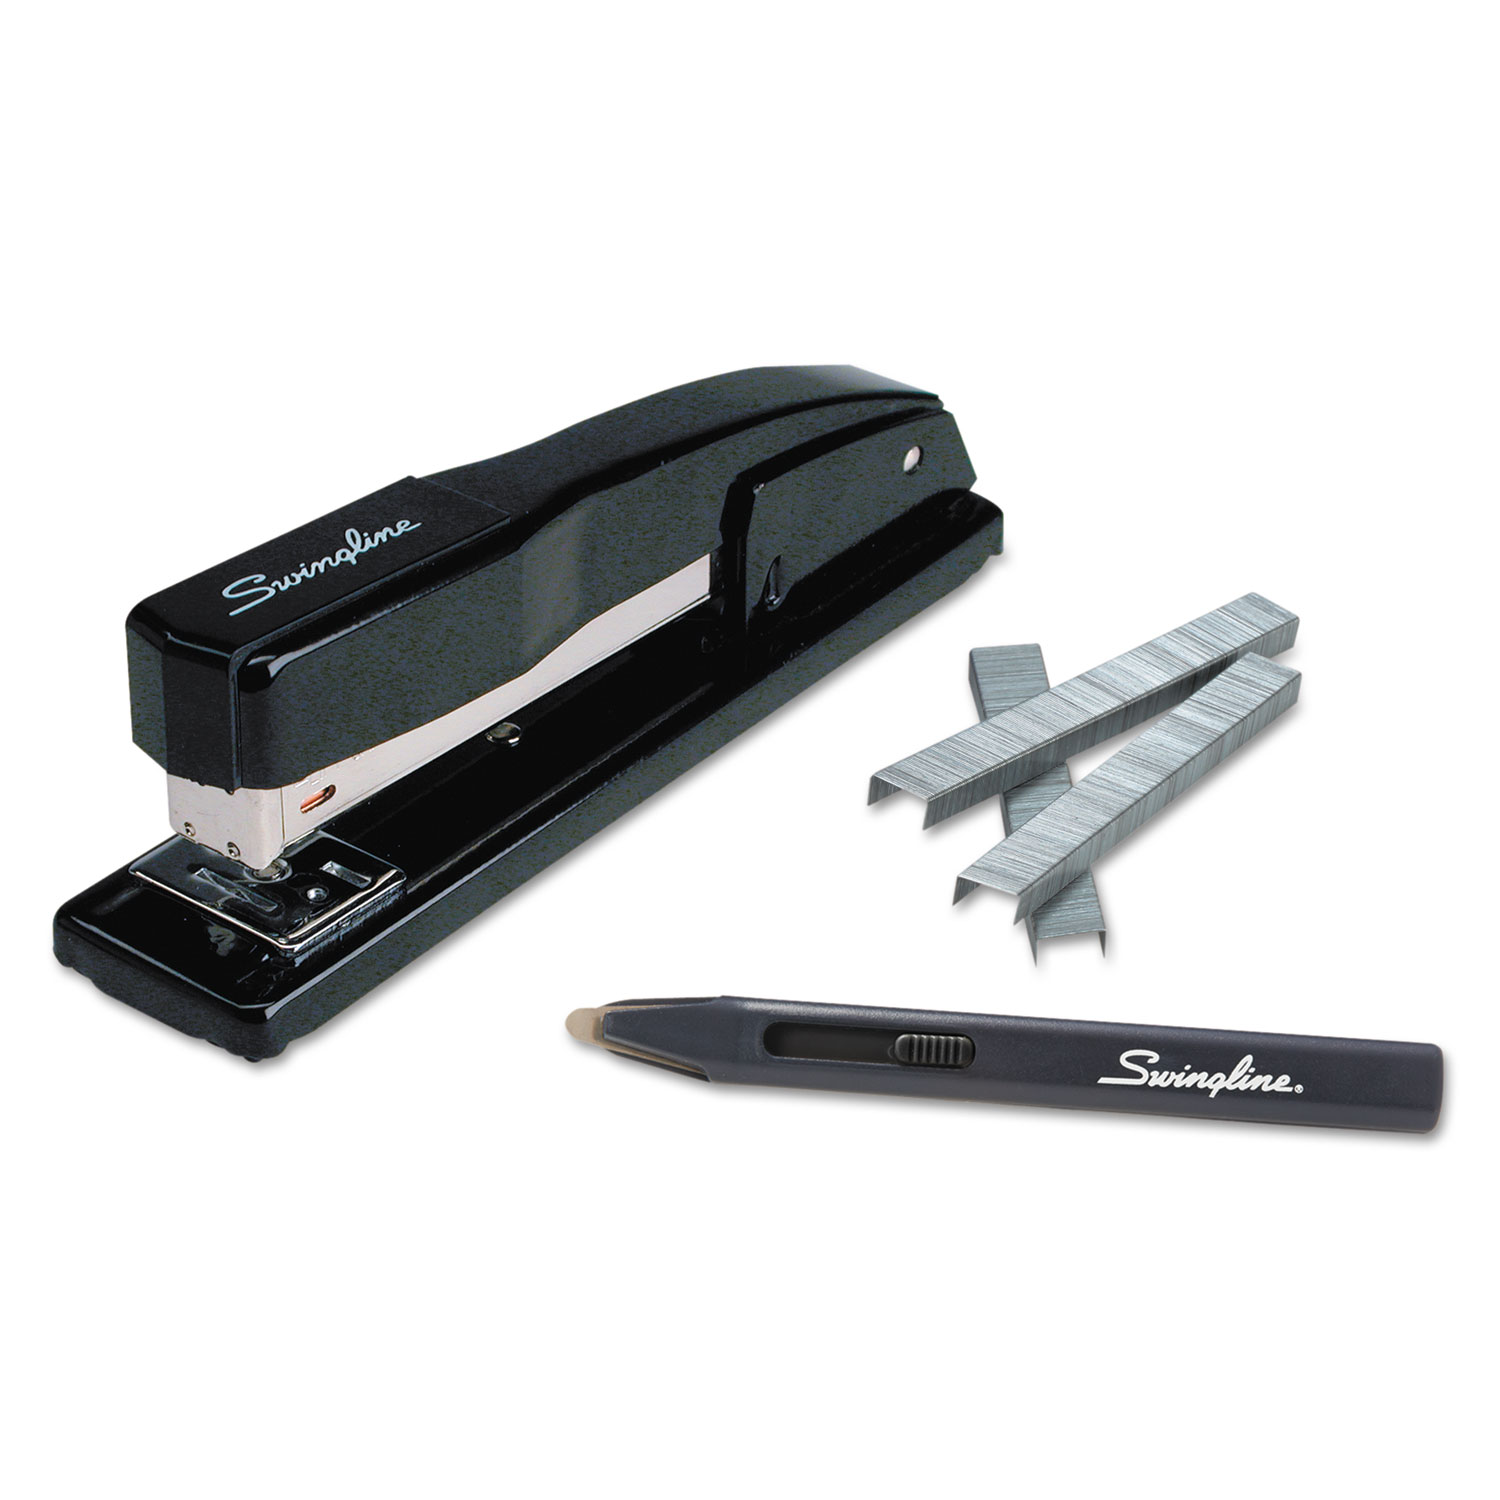  Swingline S7044420 Commercial Desk Stapler Value Pack, 20-Sheet Capacity, Black (SWI44420) 